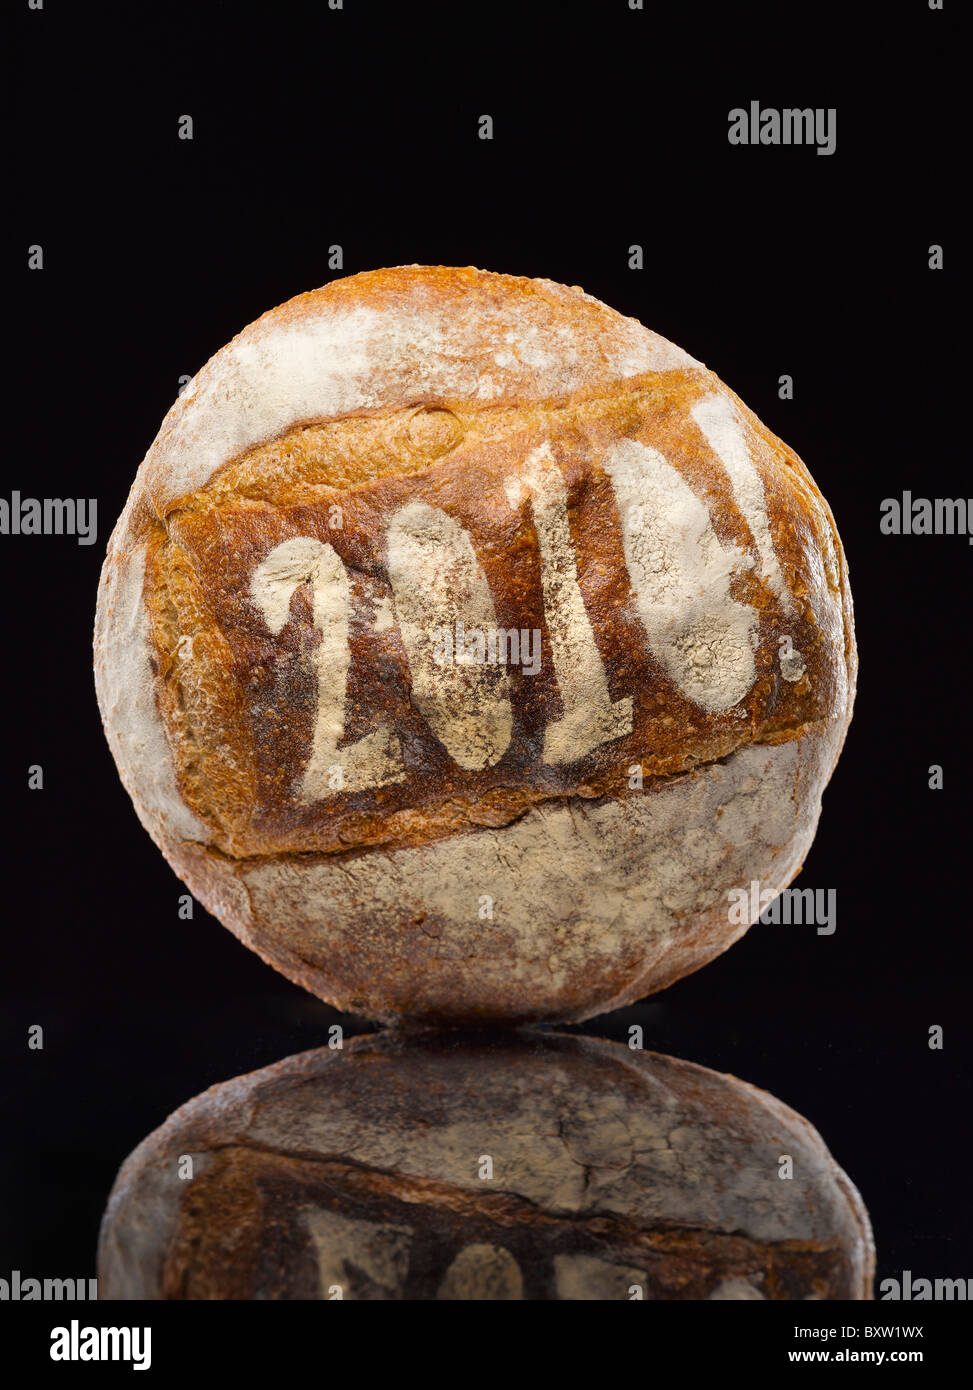 Miche de pain rond saupoudrés de l'année date Banque D'Images